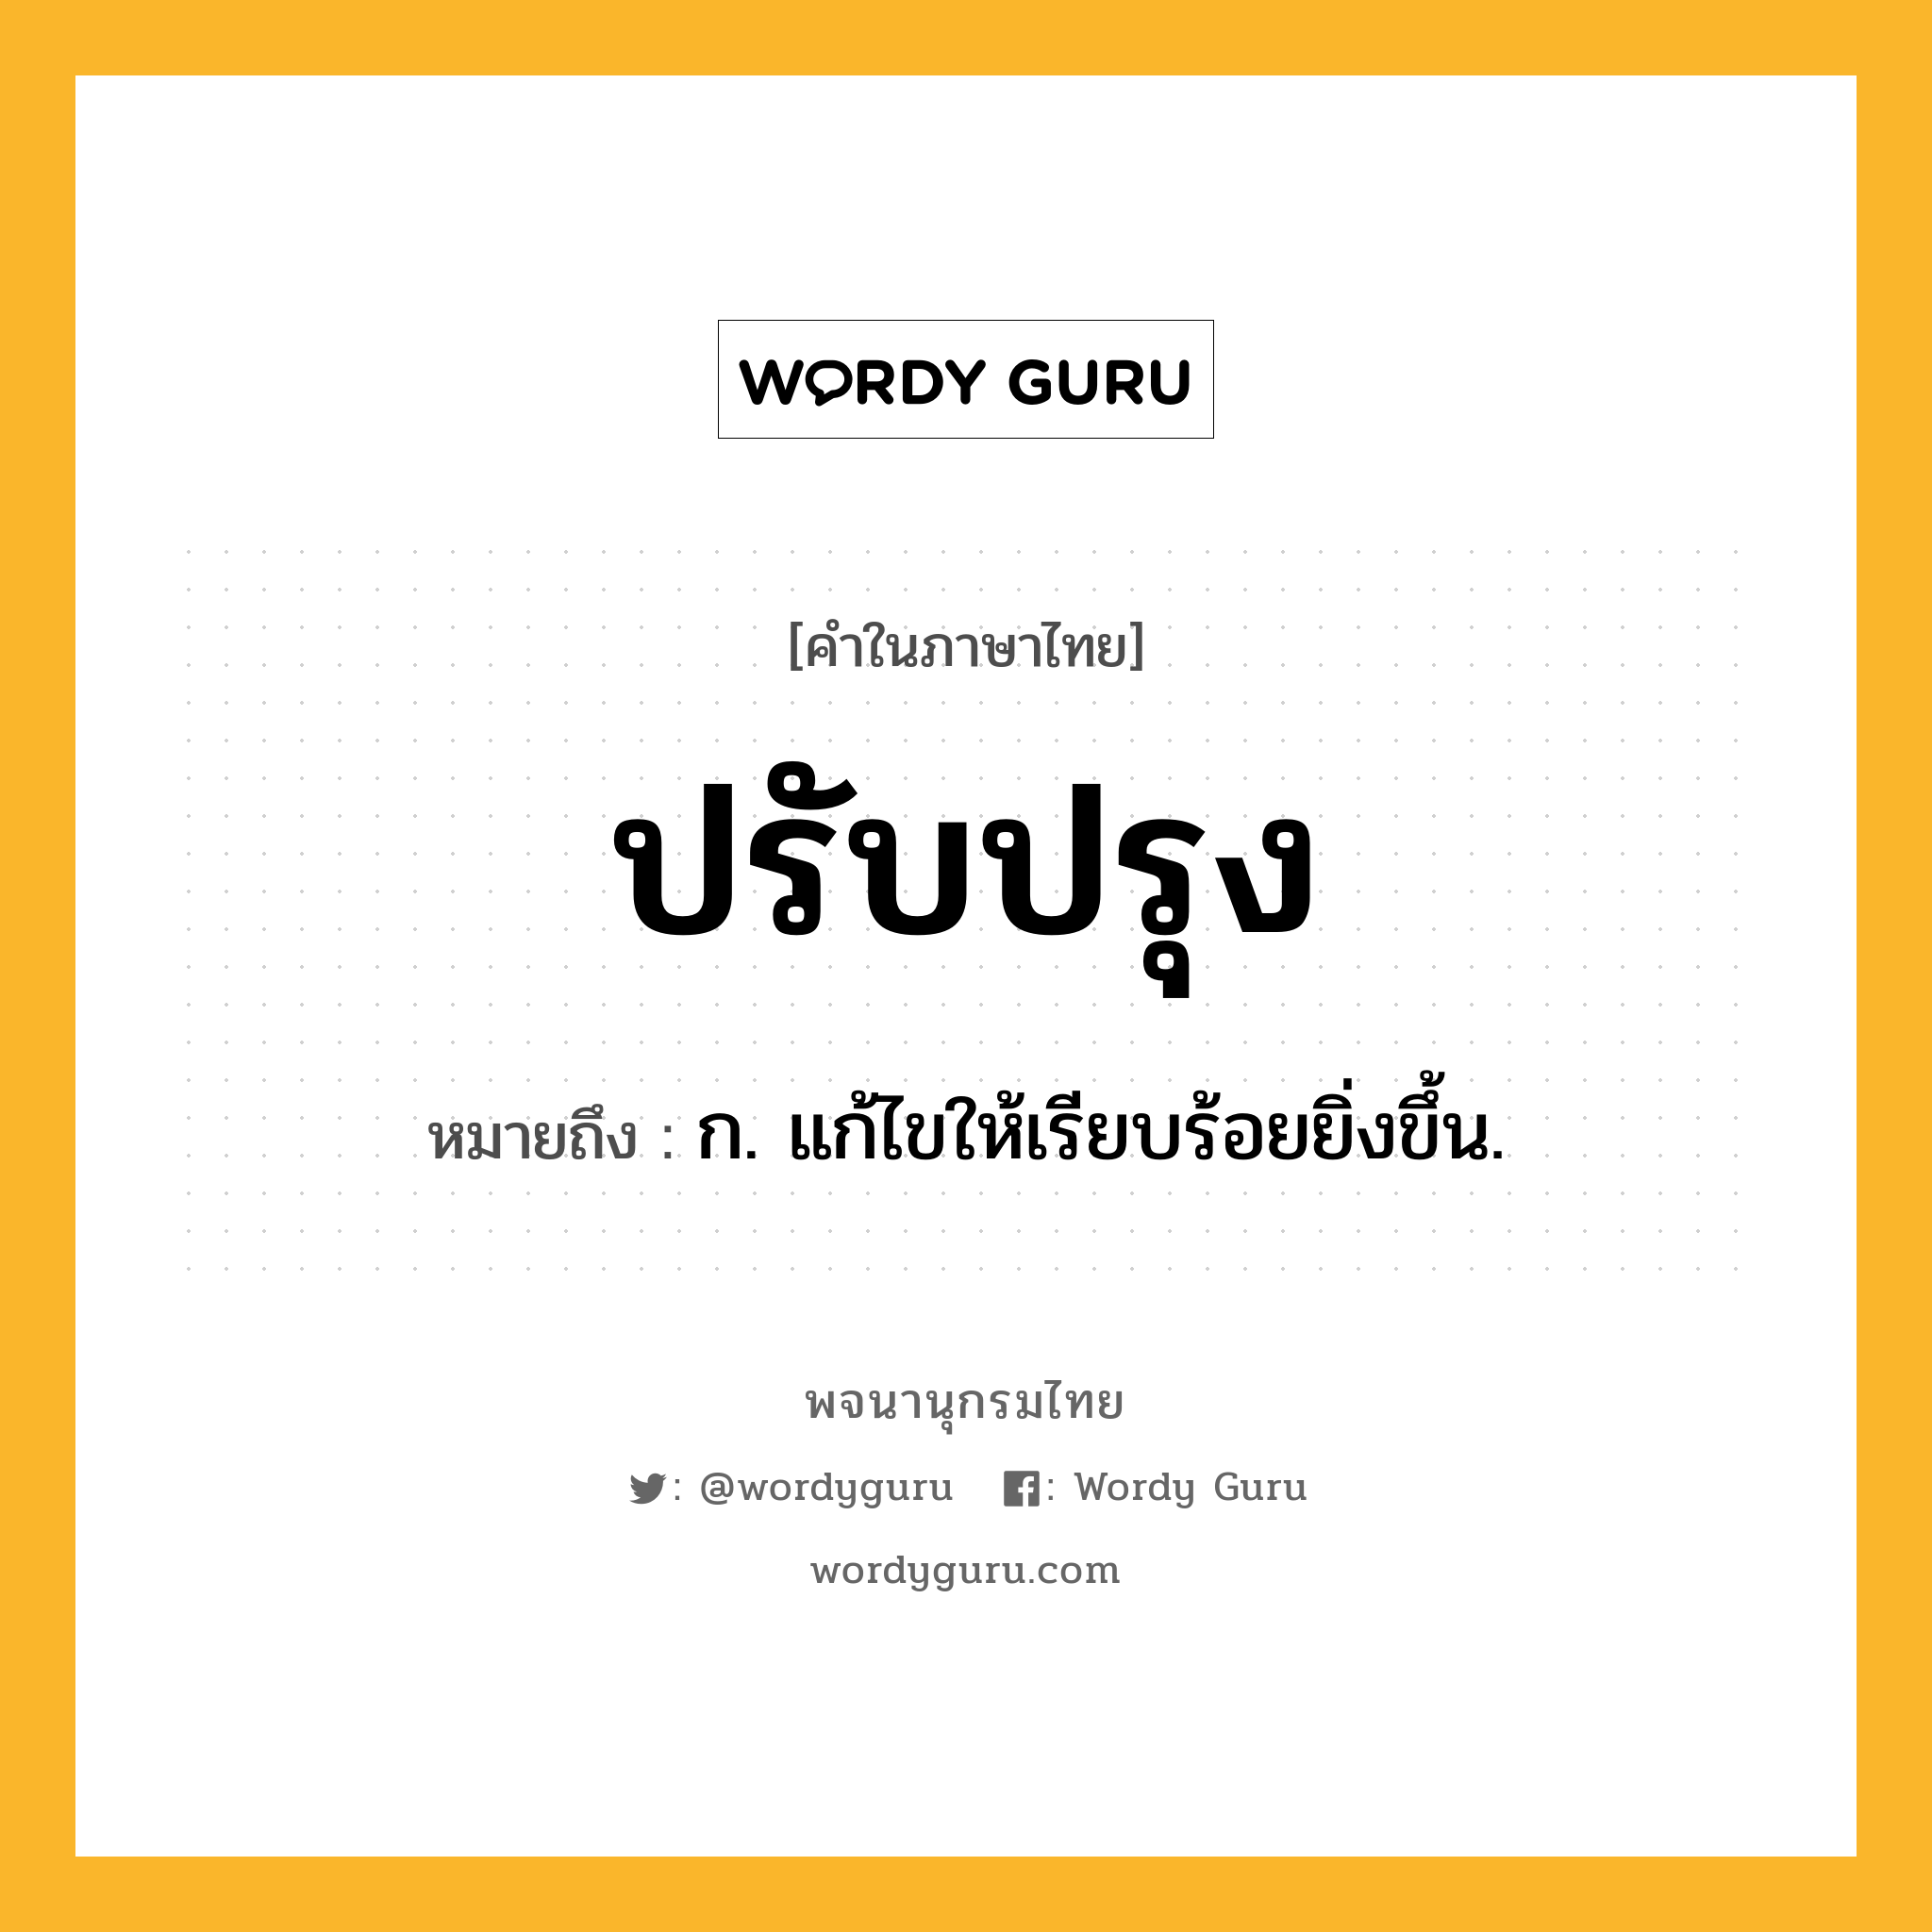 ปรับปรุง ความหมาย หมายถึงอะไร?, คำในภาษาไทย ปรับปรุง หมายถึง ก. แก้ไขให้เรียบร้อยยิ่งขึ้น.